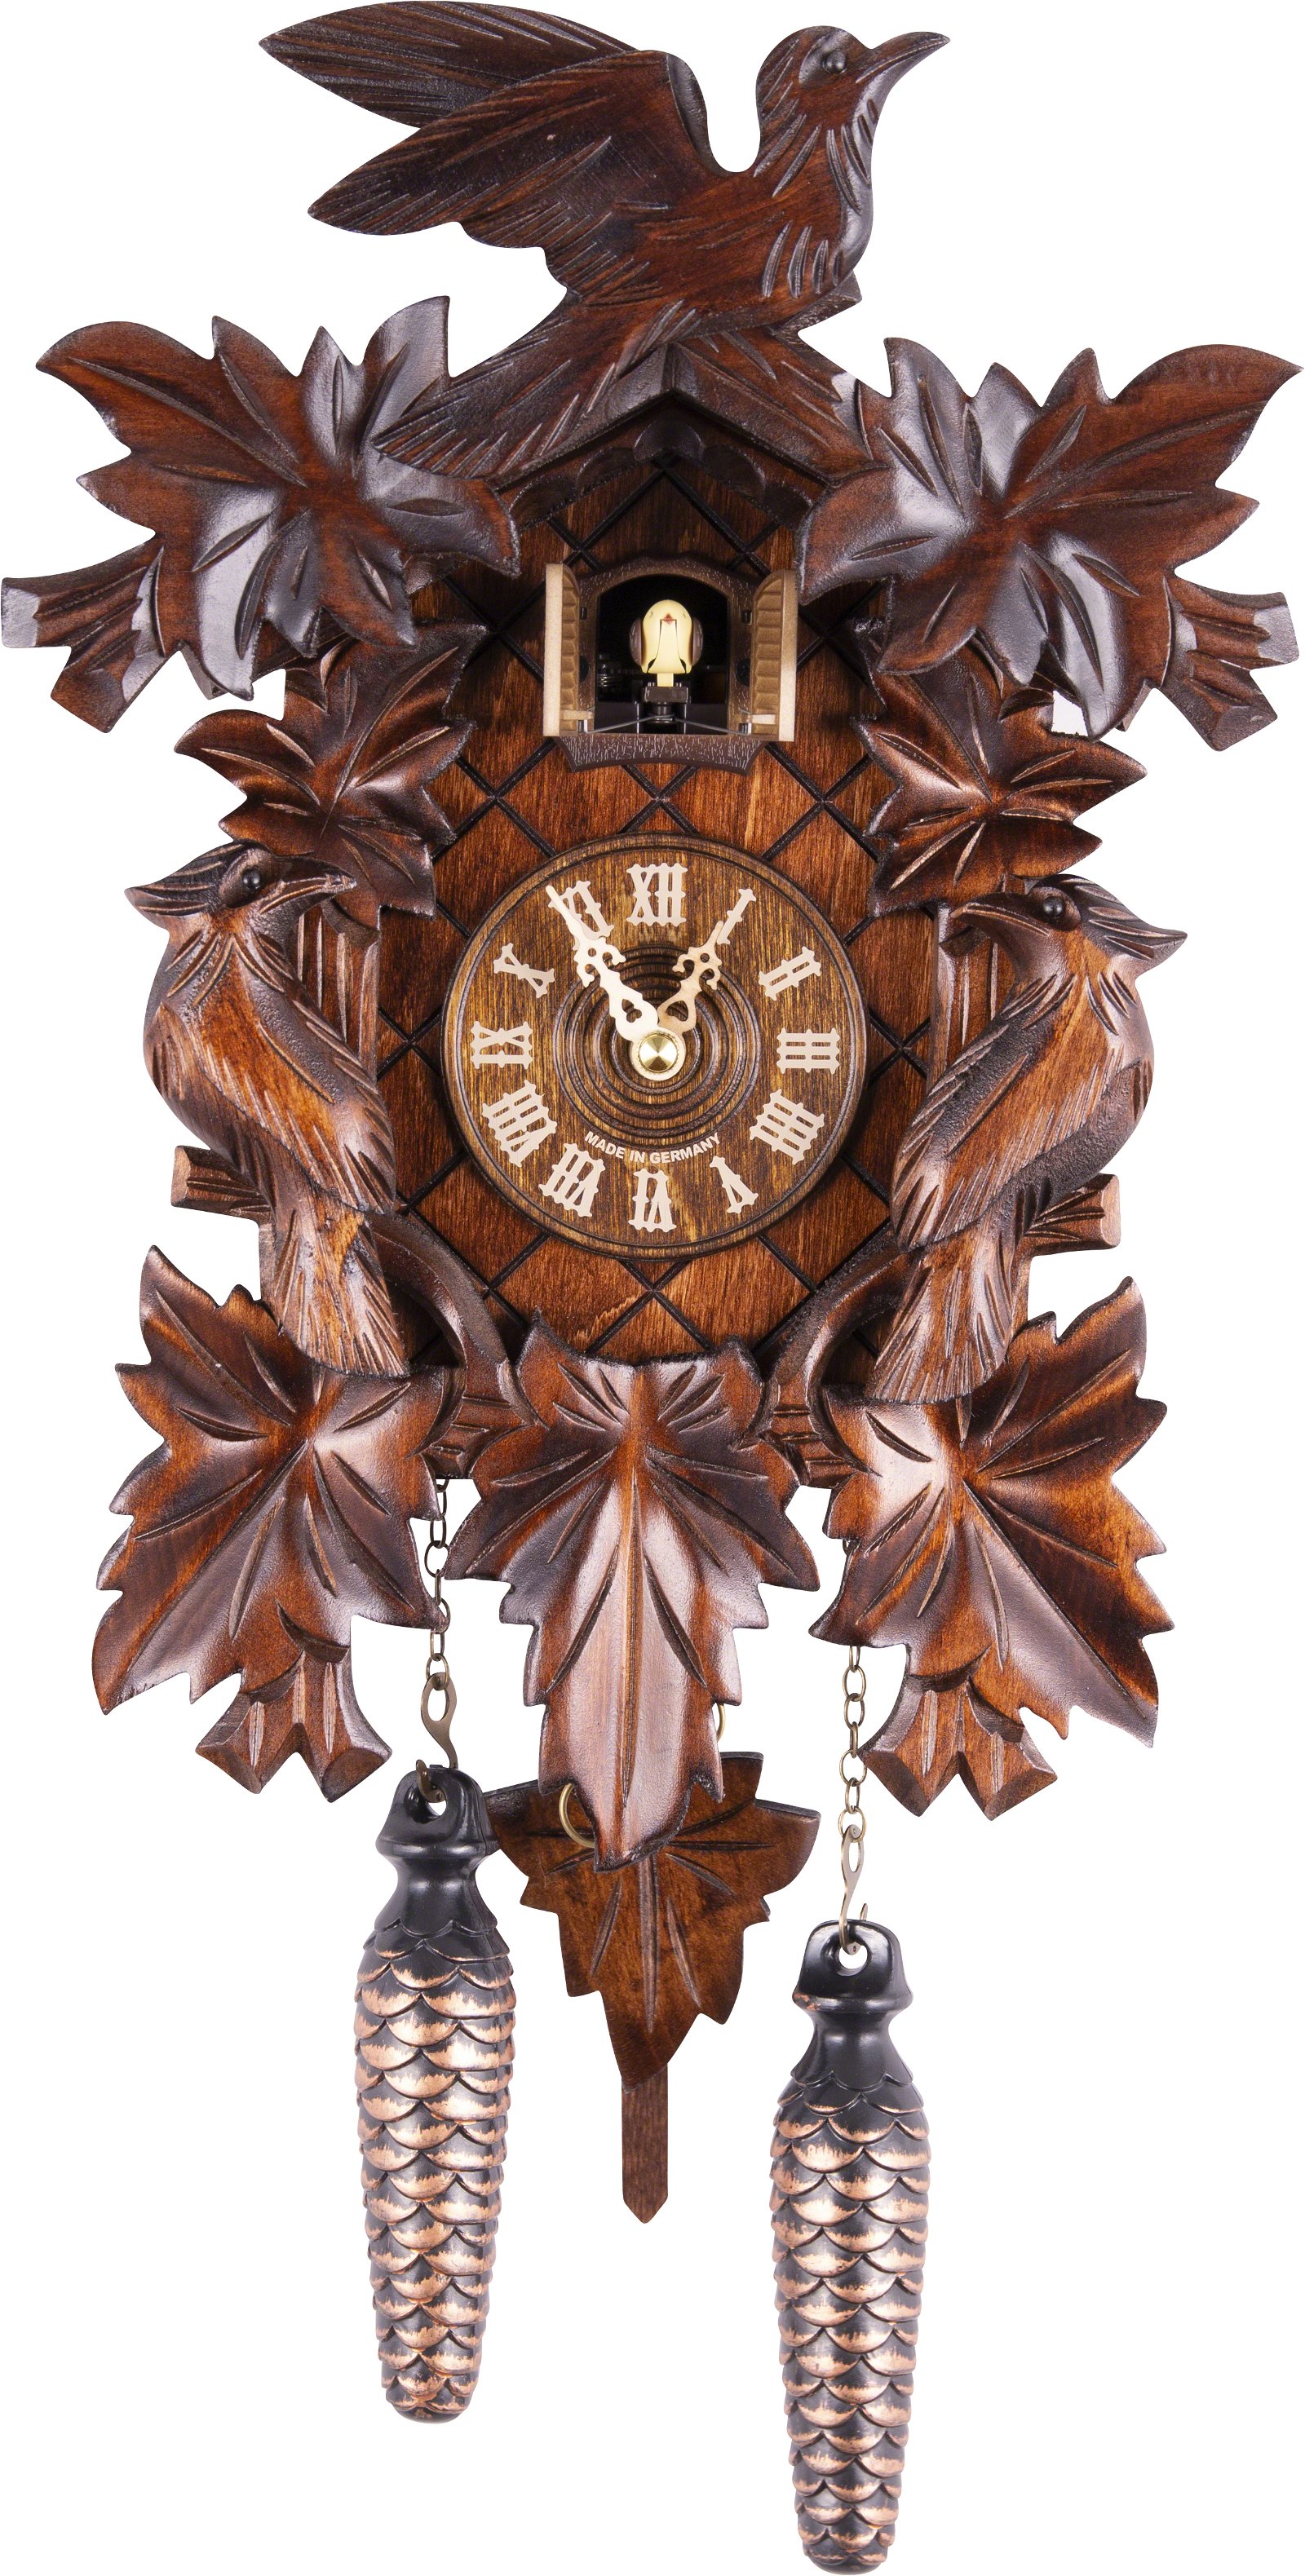 Kuckucksuhr geschnitzt Quarz-Uhrwerk 36cm von Trenkle Uhren